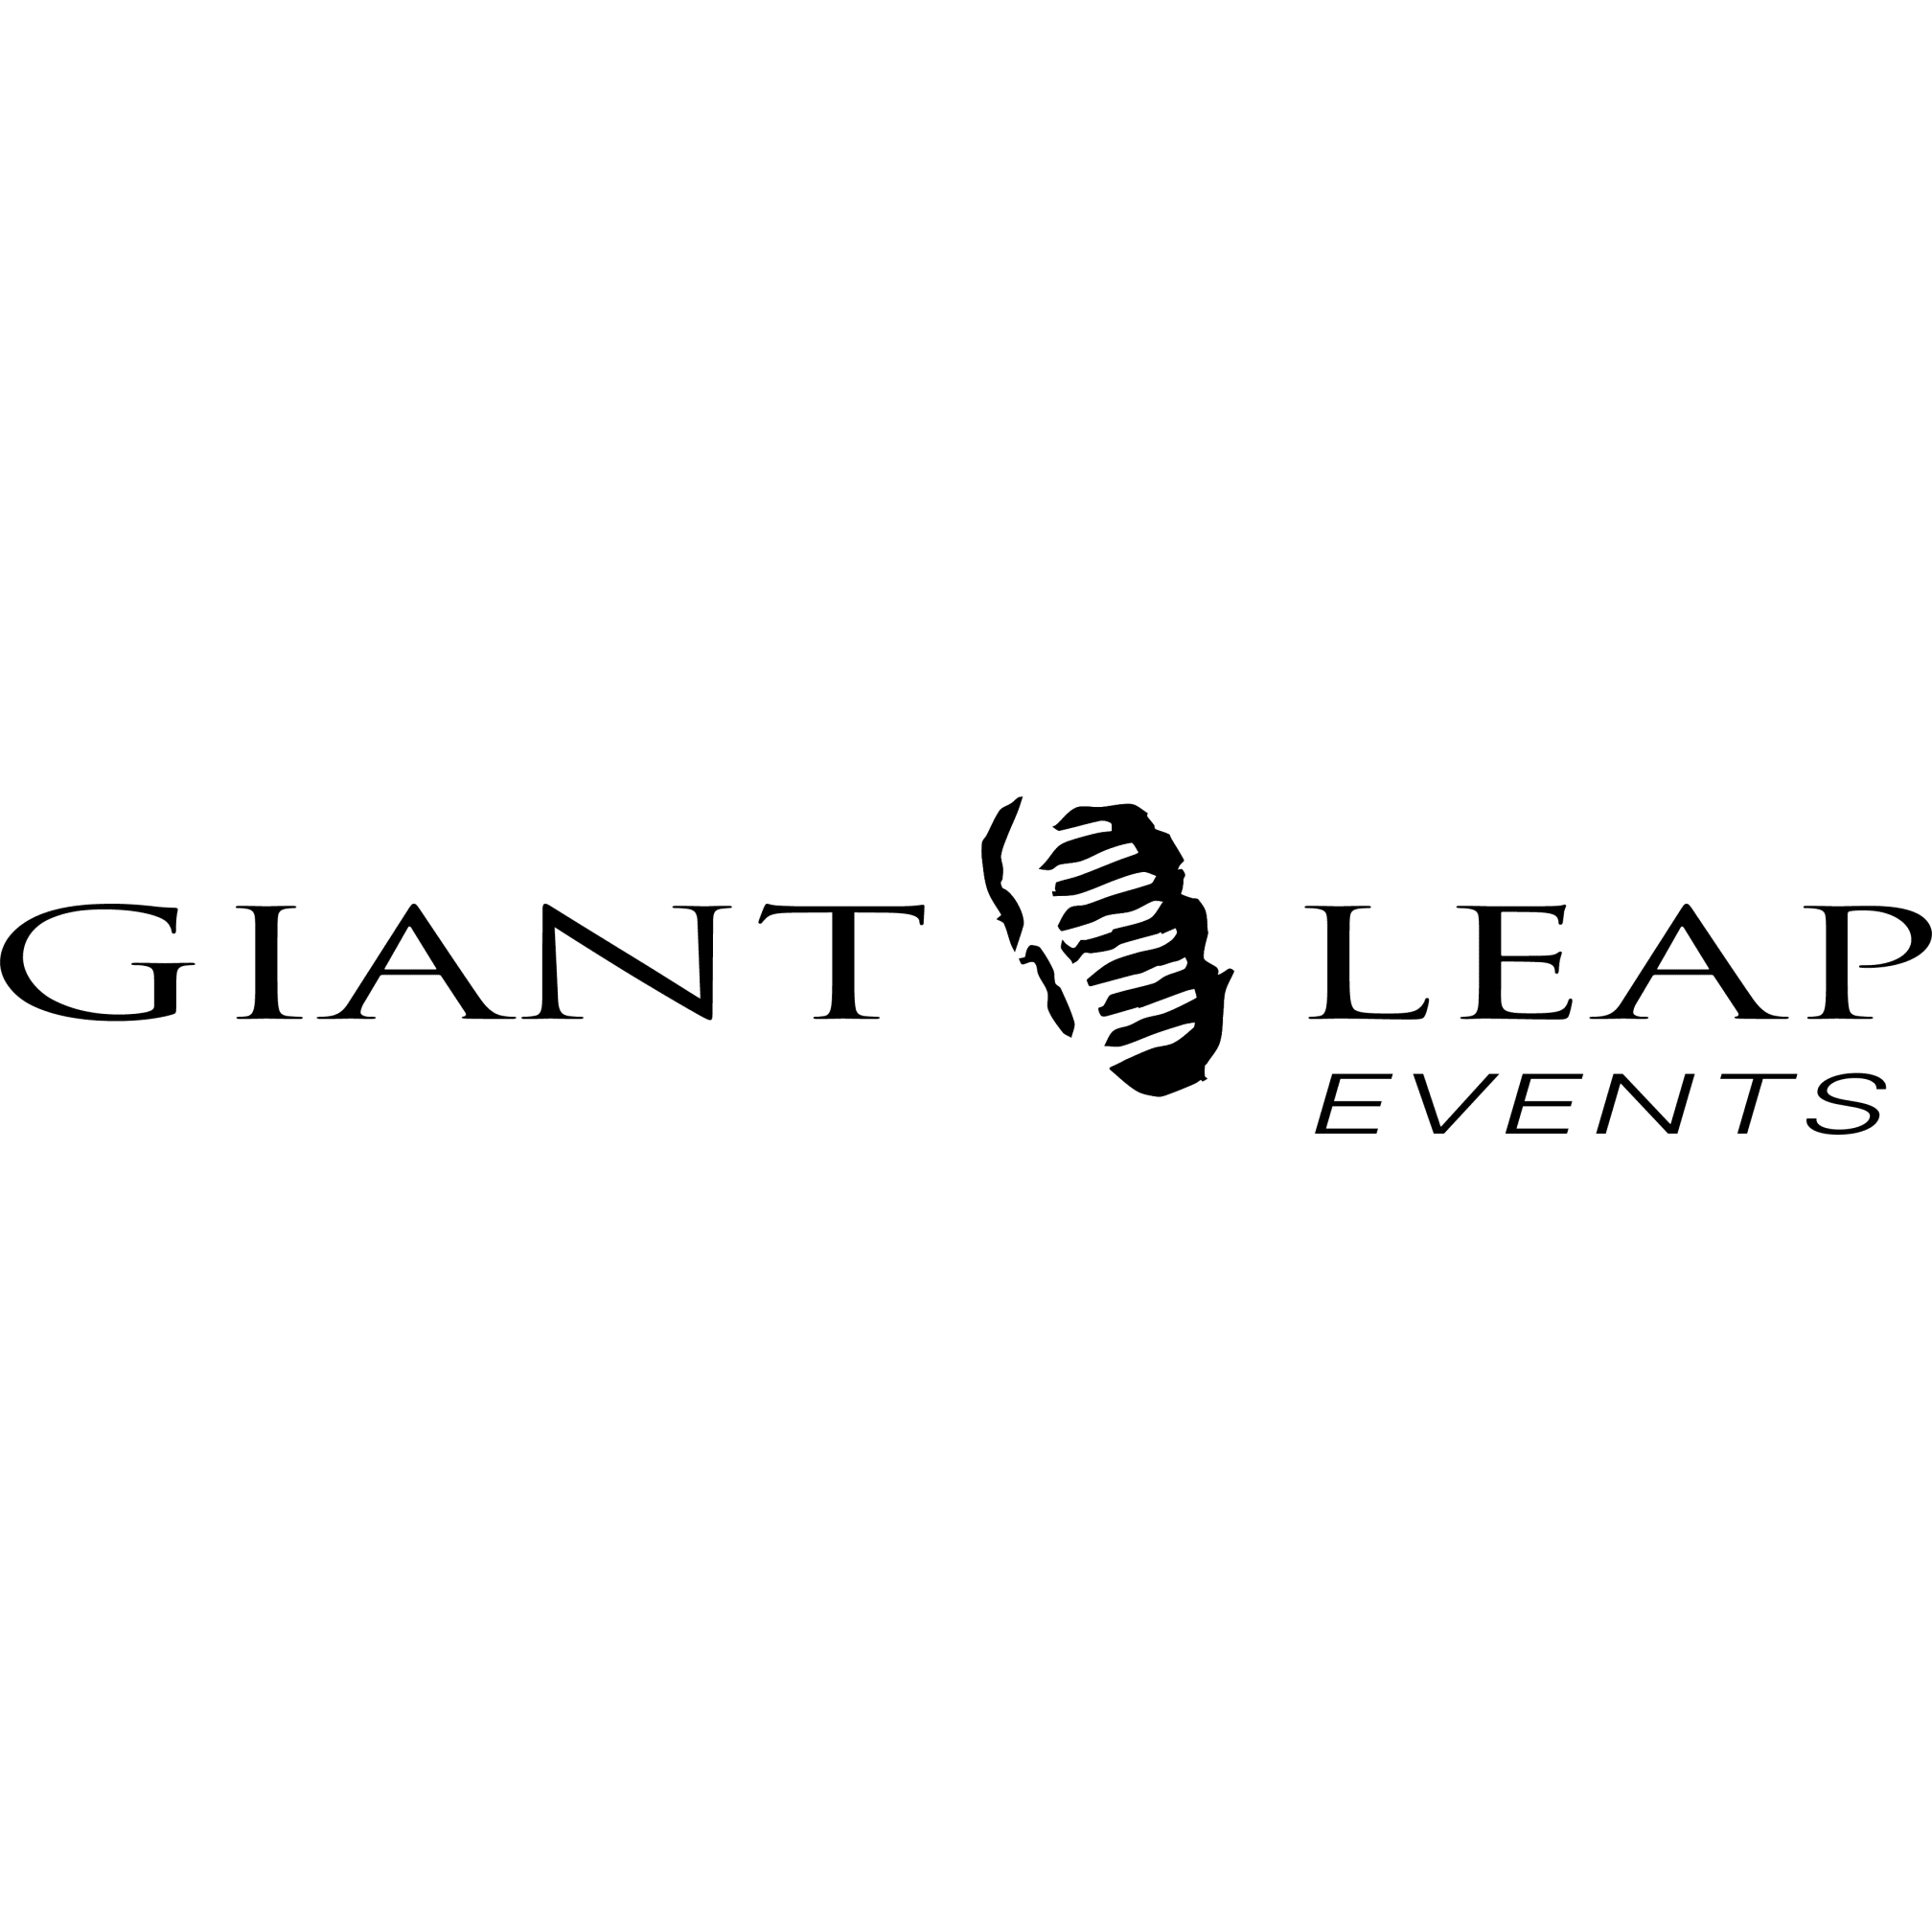 LOGO Giant Leap Event Management Banbury 01295 738550